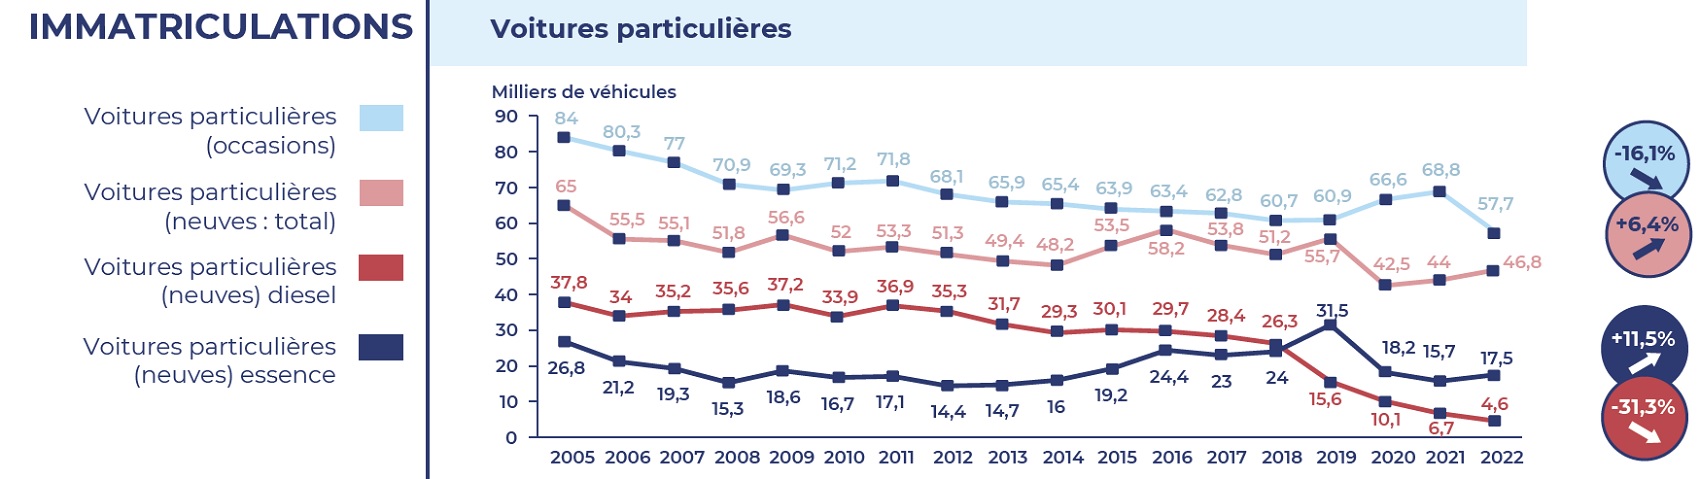 graphique représentant les immatriculations des voitures particulières neuves à Paris en 2022